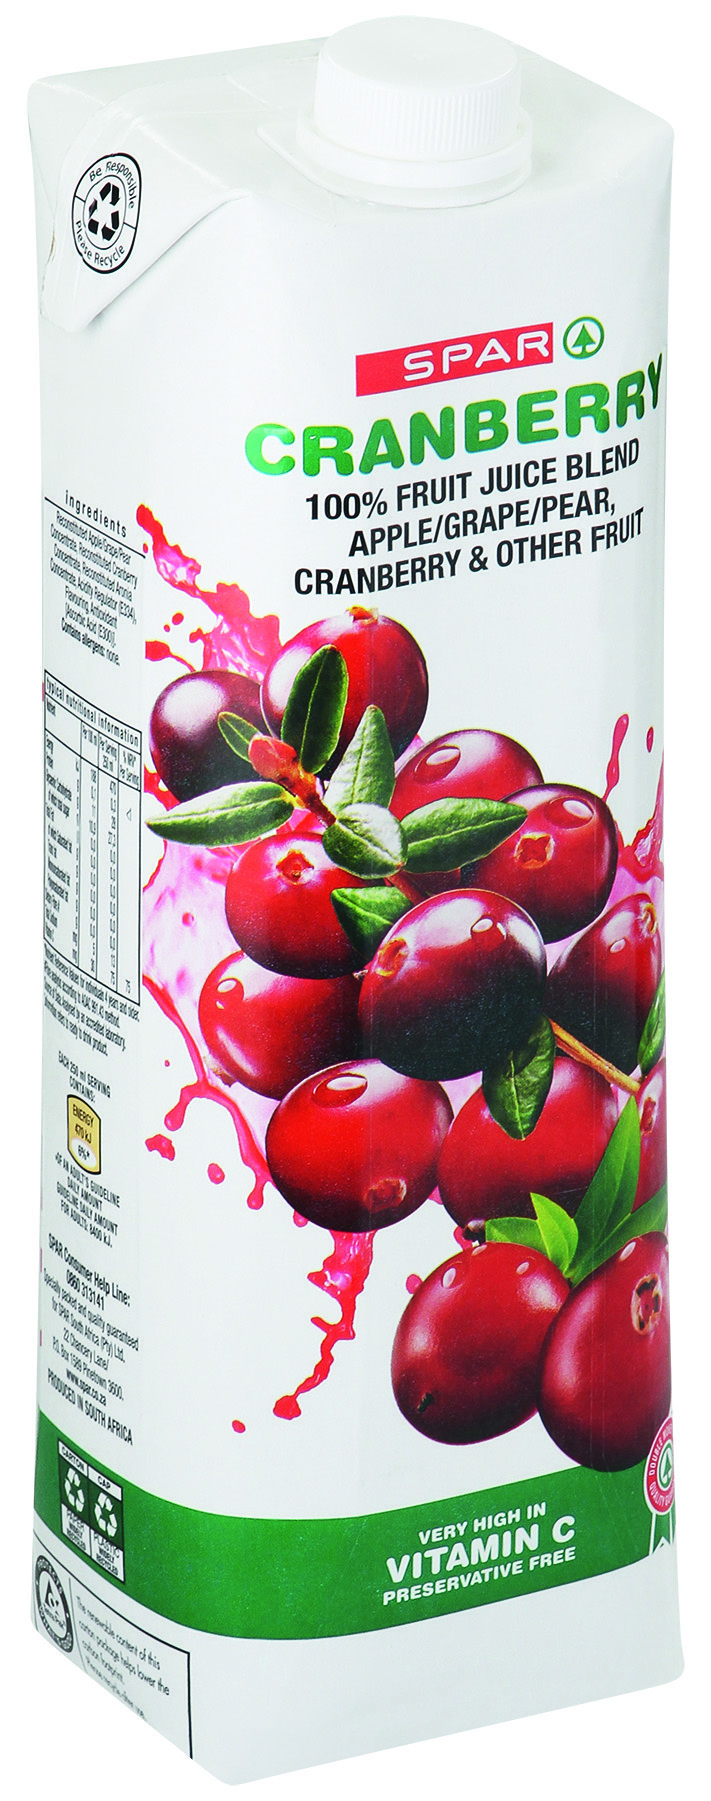 100% fruit juice blend - cranberry